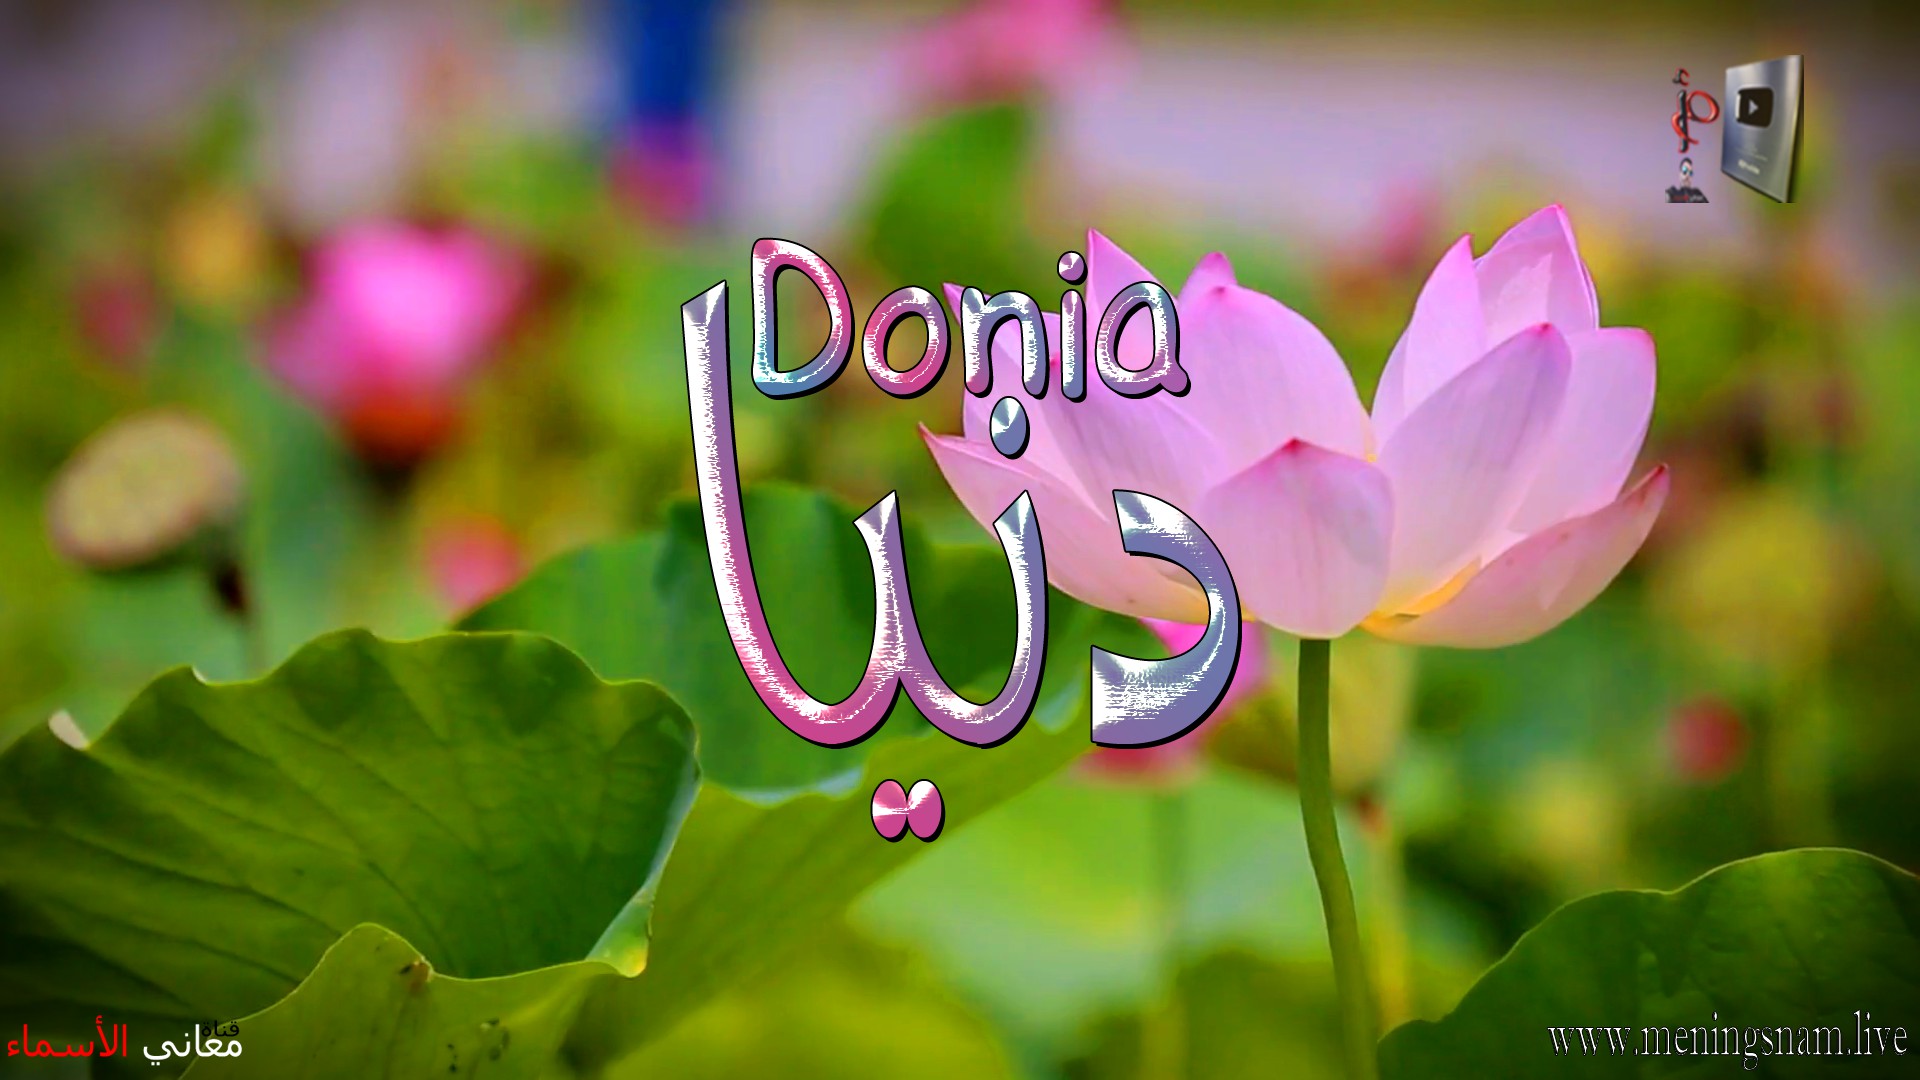 معنى اسم, دنيا, وصفات, حاملة, هذا الاسم, Donia,